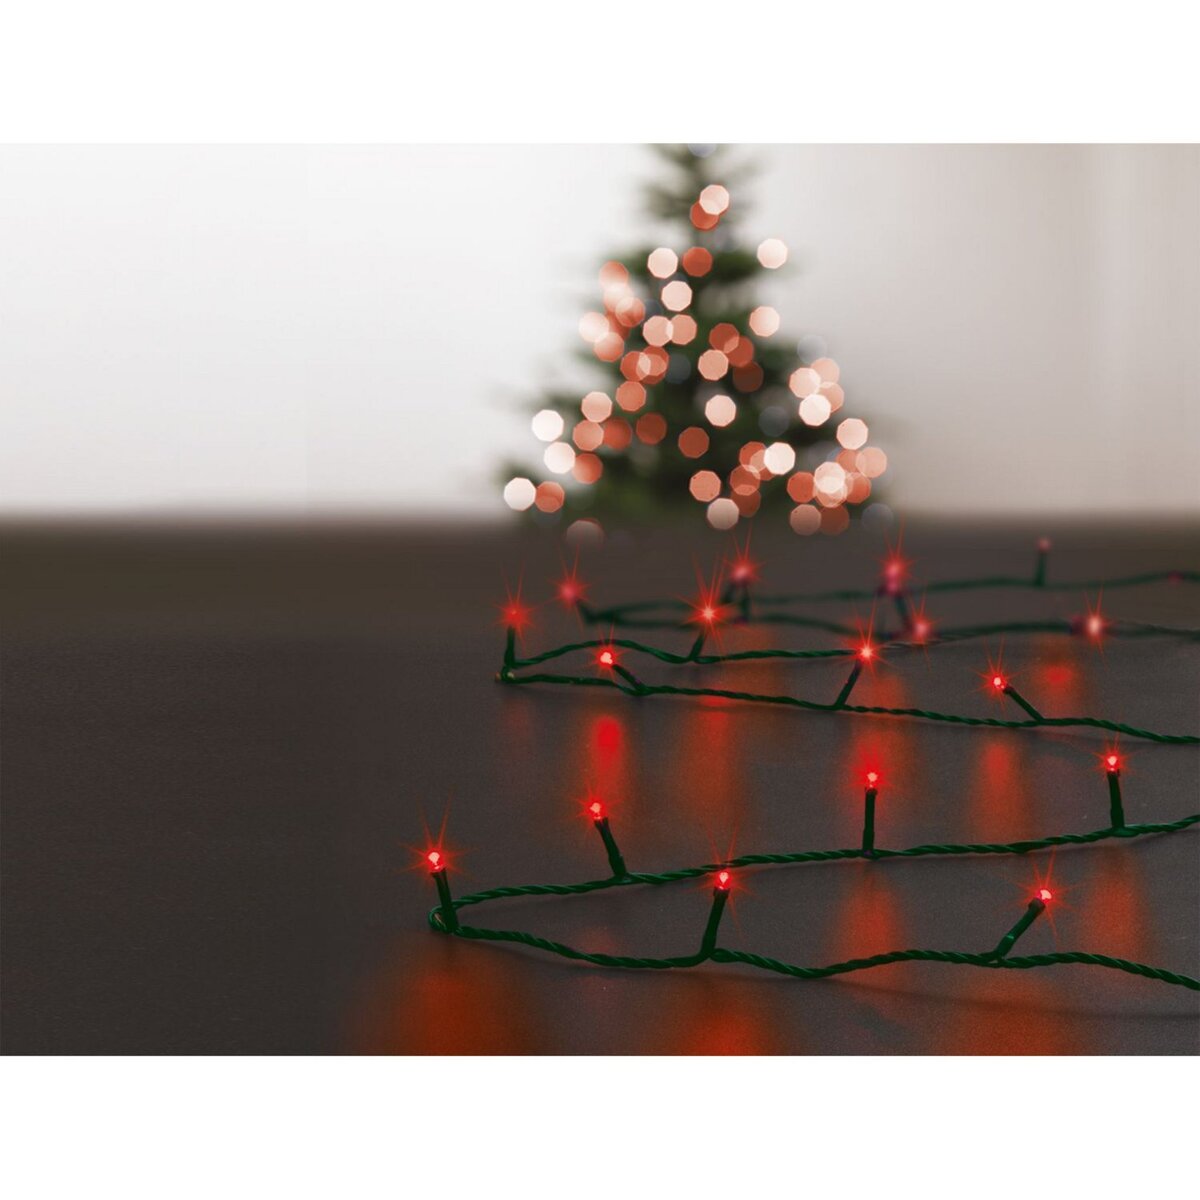 Installer une guirlande d'extérieur pour Noël – Déco festive